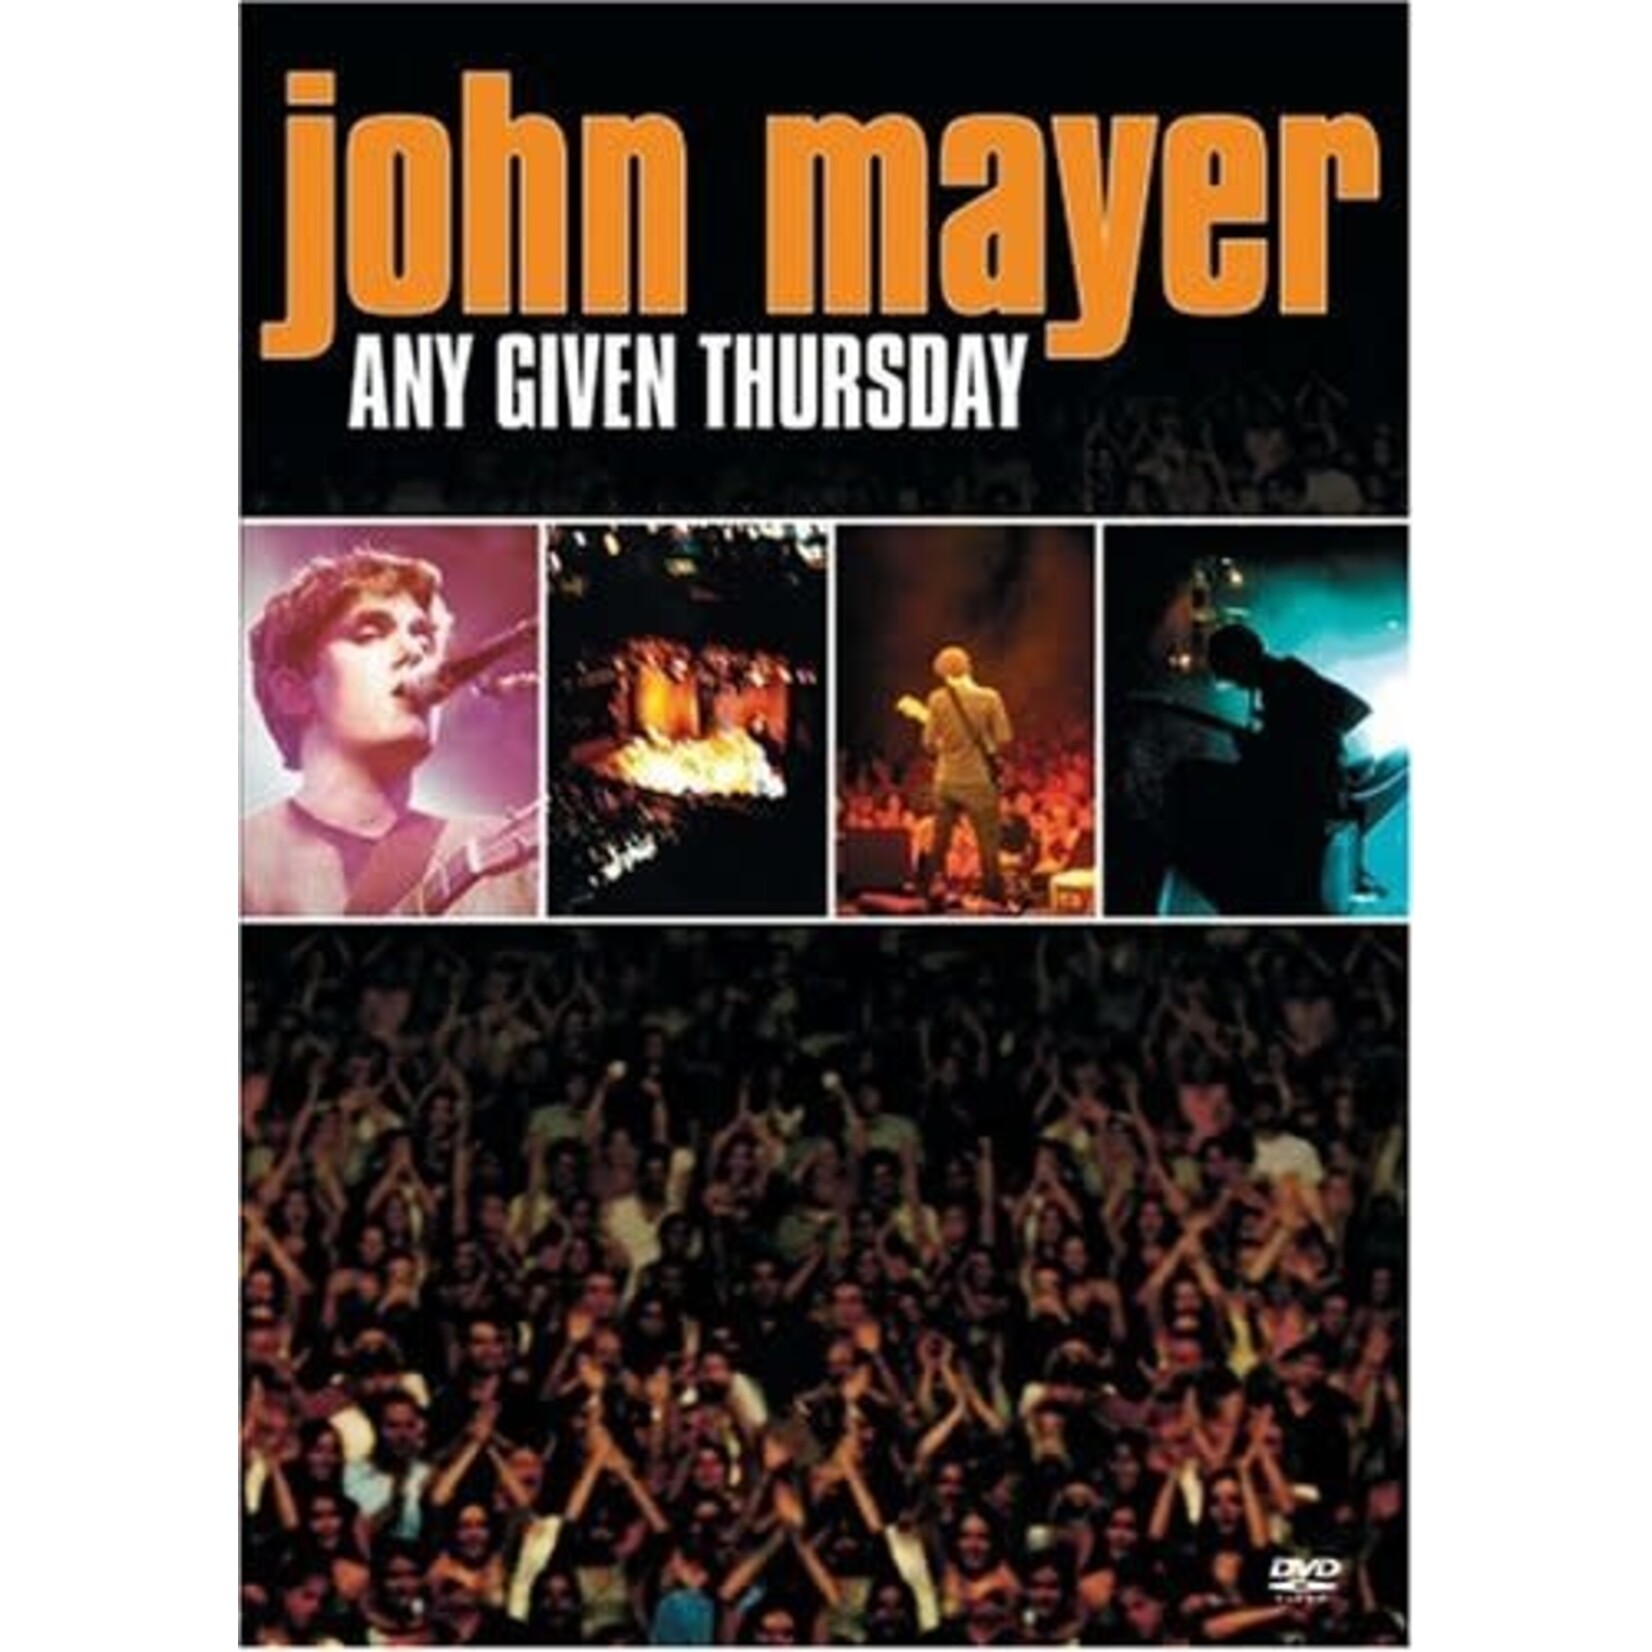 John Mayer - Any Given Thursday [USED DVD]